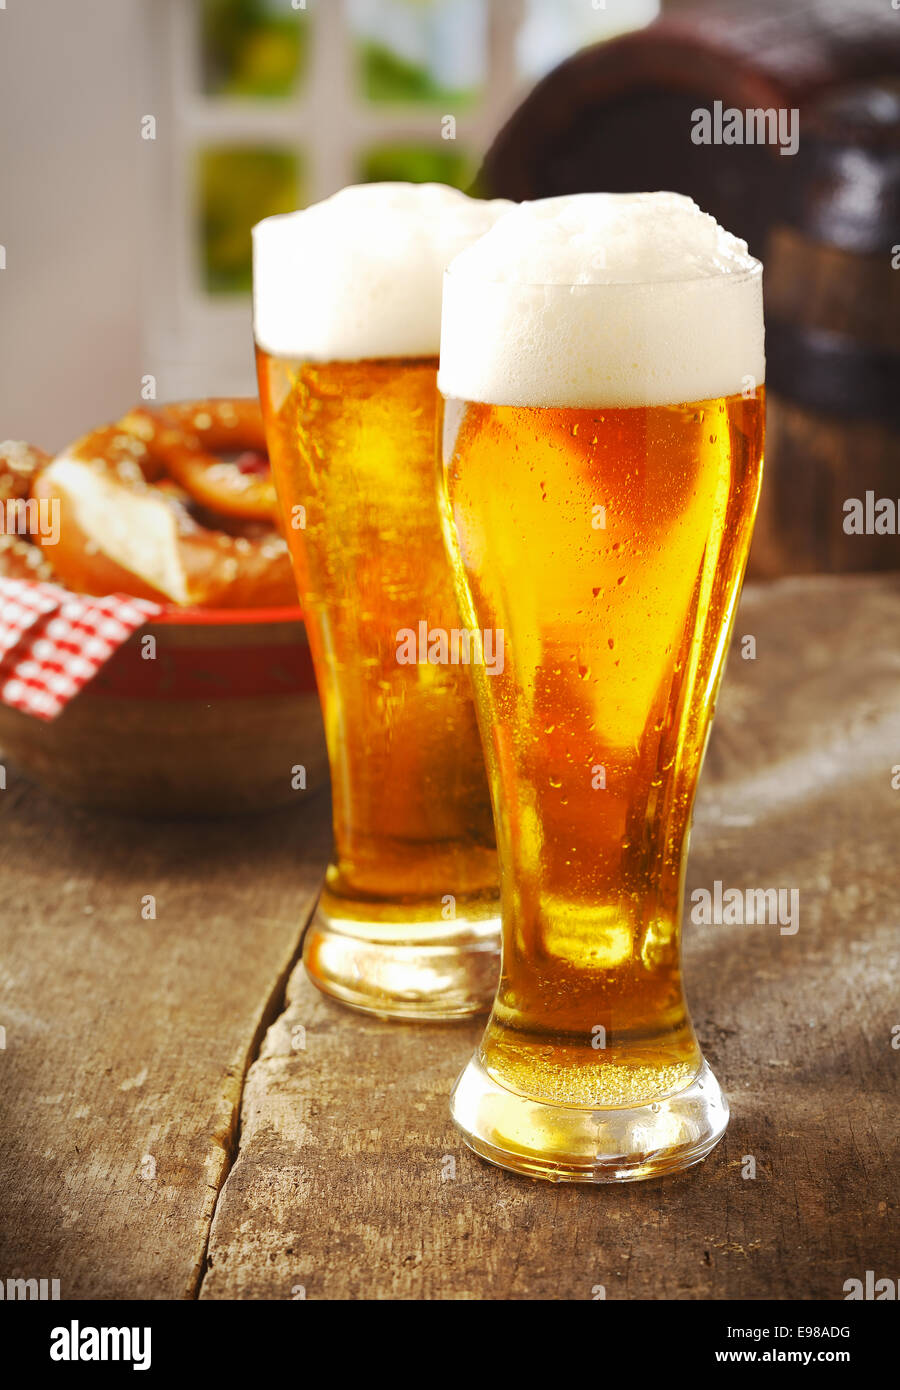 Zwei große Gläser golden Ale oder Bier mit einem guten Kopf des weißen Schaum auf einem alten hölzernen Küchentisch mit einem Korb mit Brötchen hinter Stockfoto